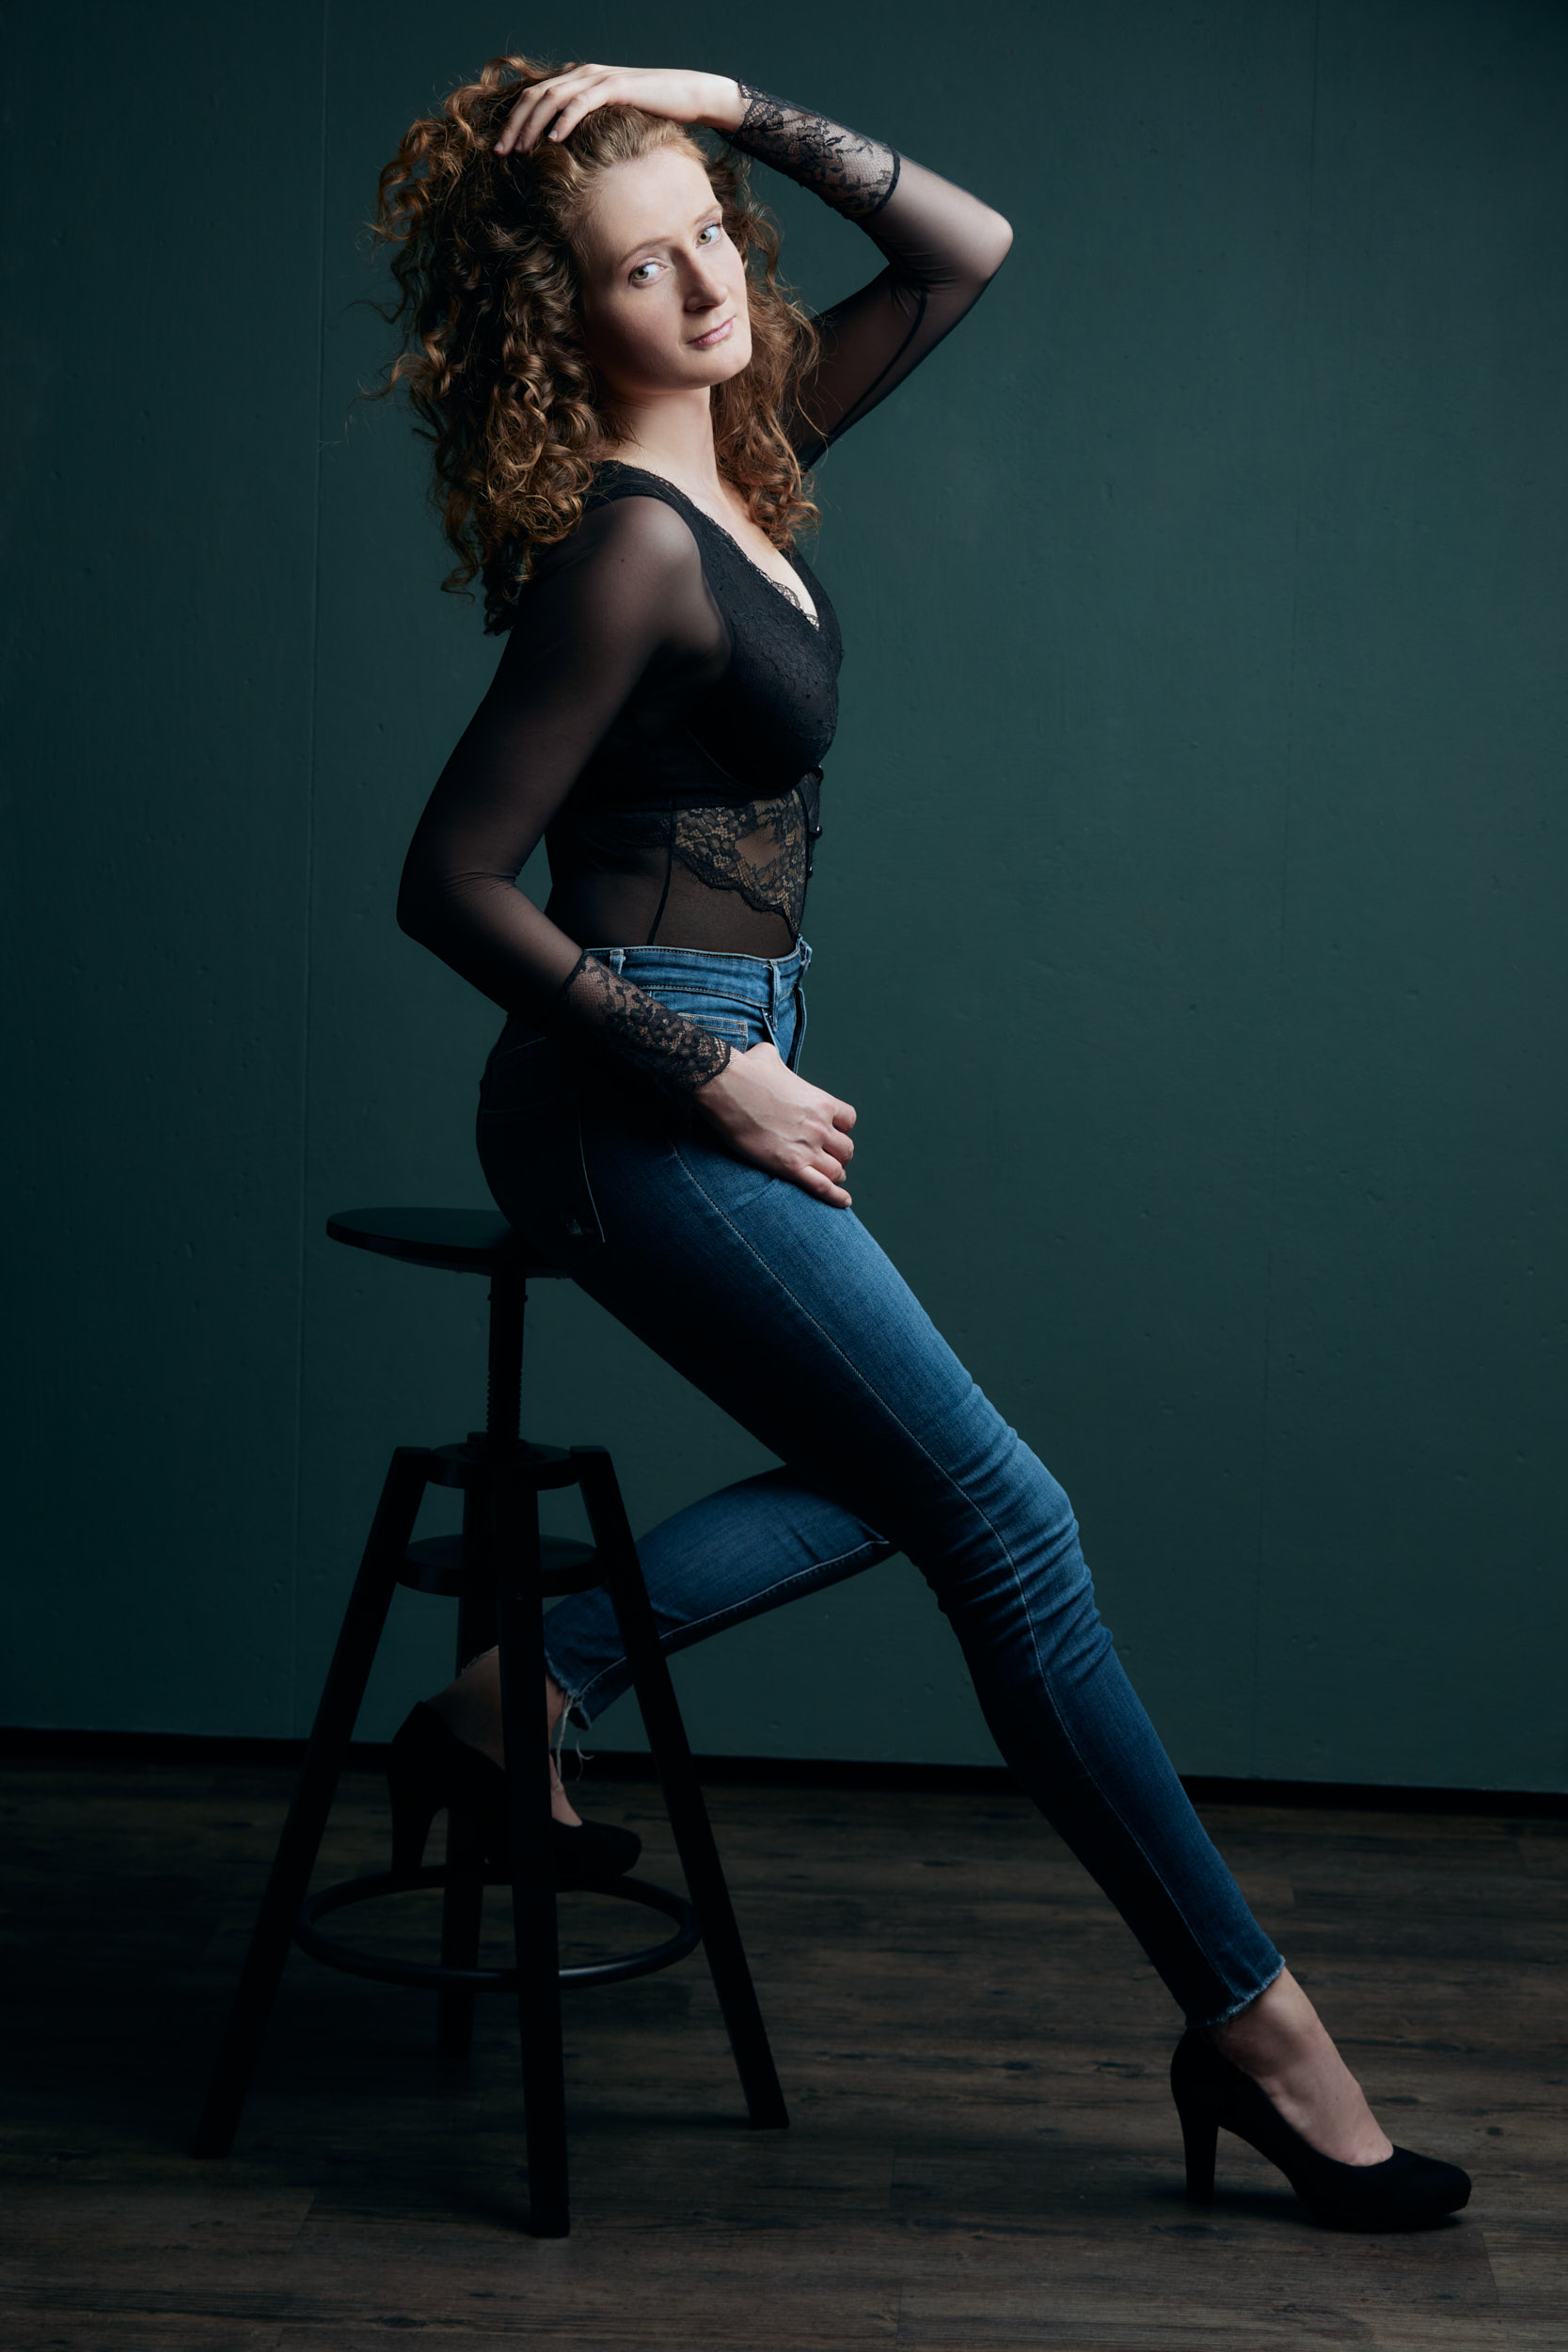 Akt-Fotoshooting einer lockigen Frau die in schwarzer Body und blauer Jeans vor einer petrolfarbenen Wand auf einem Barhocker sitz und sich durch die Haare fährt.